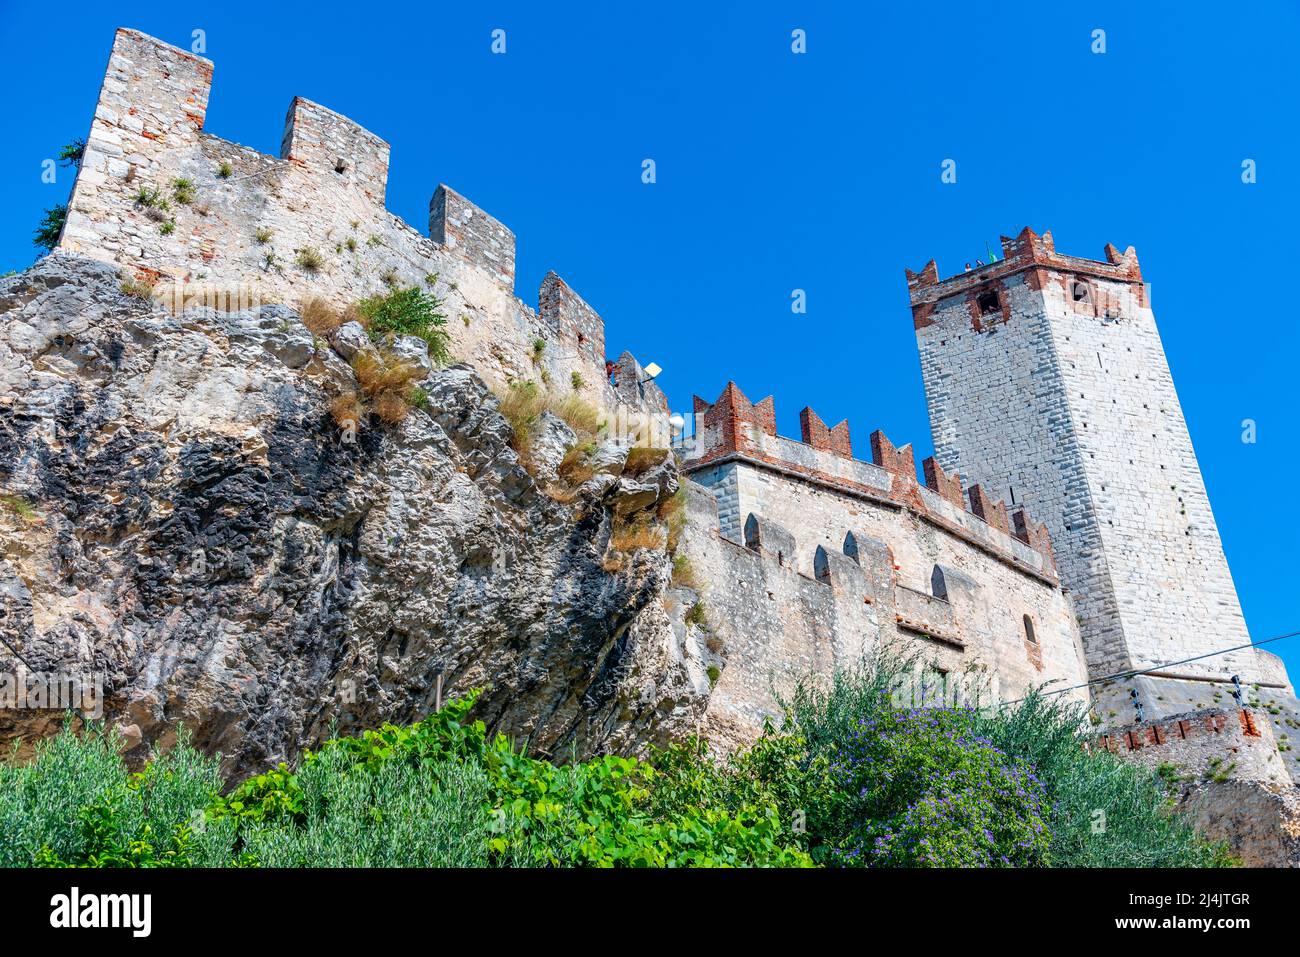 Castello di Malcesine at Lago di Garda in Italy. Stock Photo